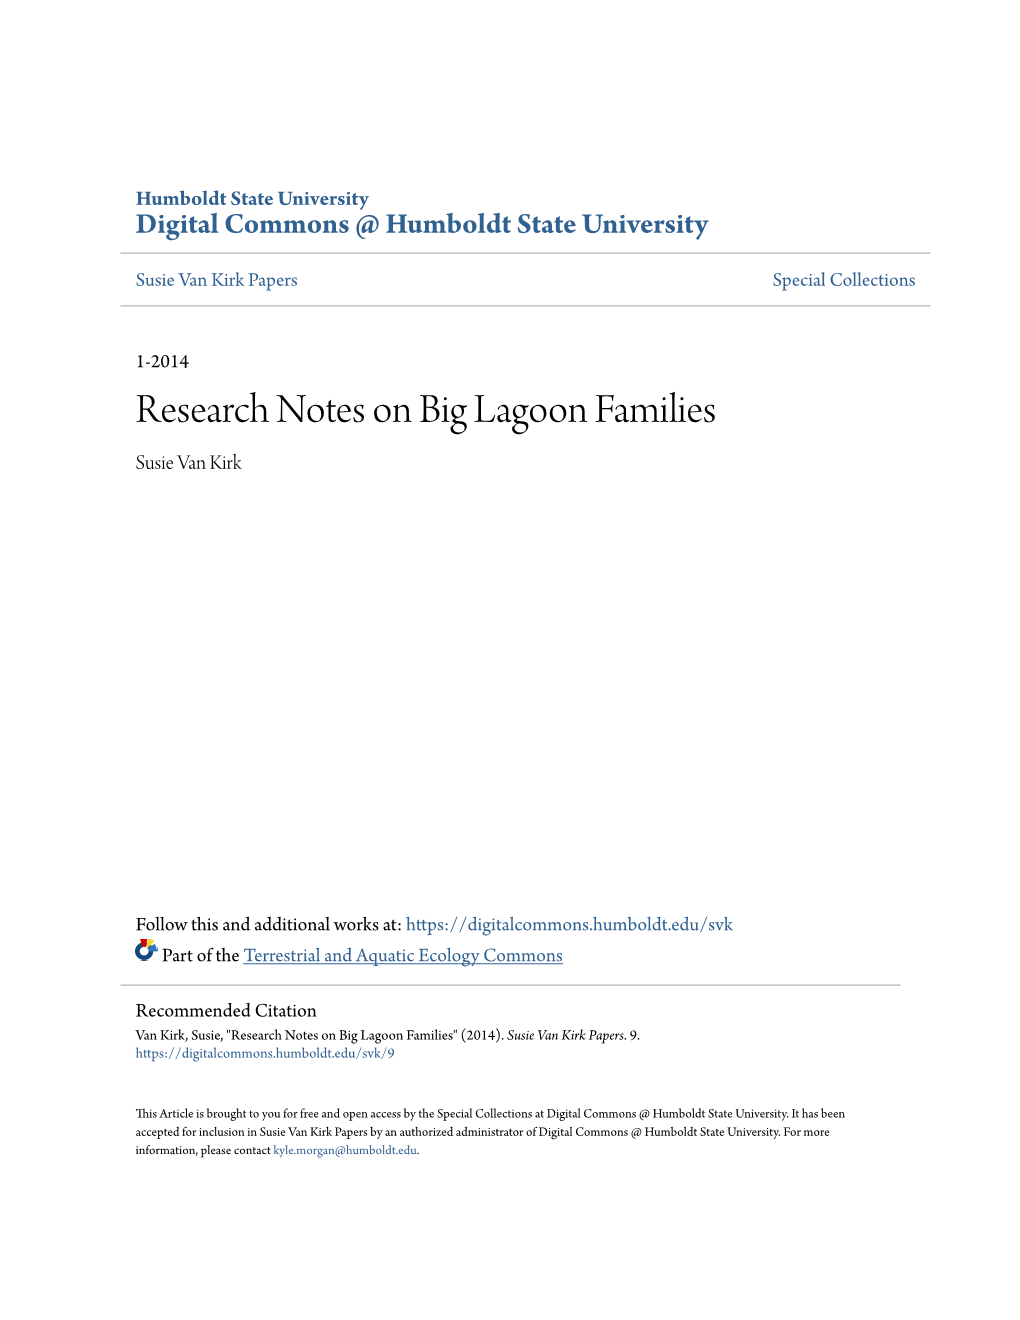 Research Notes on Big Lagoon Families Susie Van Kirk